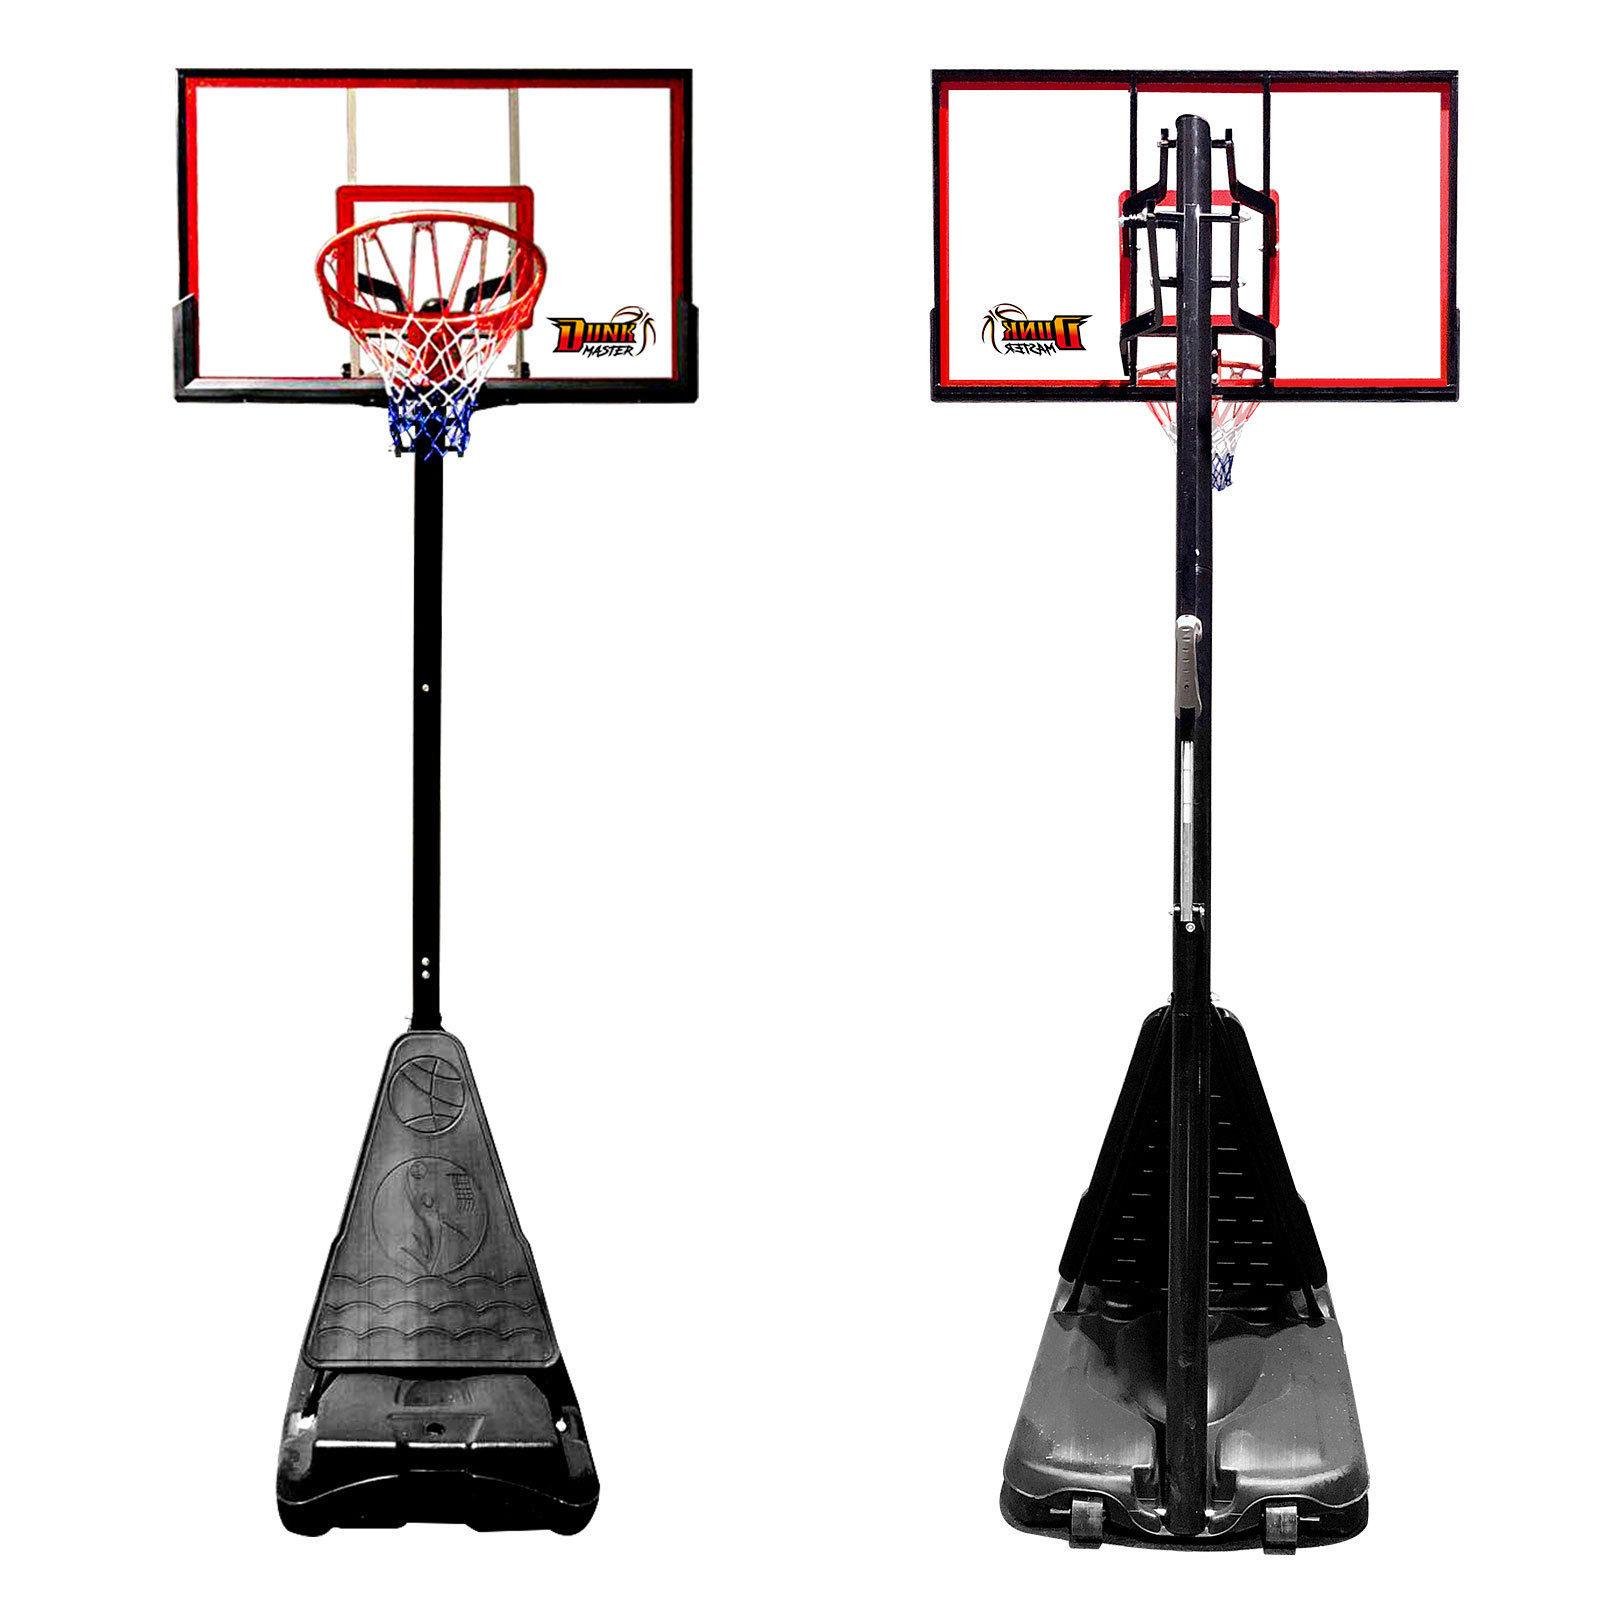 Outdoor Premium Basketball Stand /Adjustable Hoop